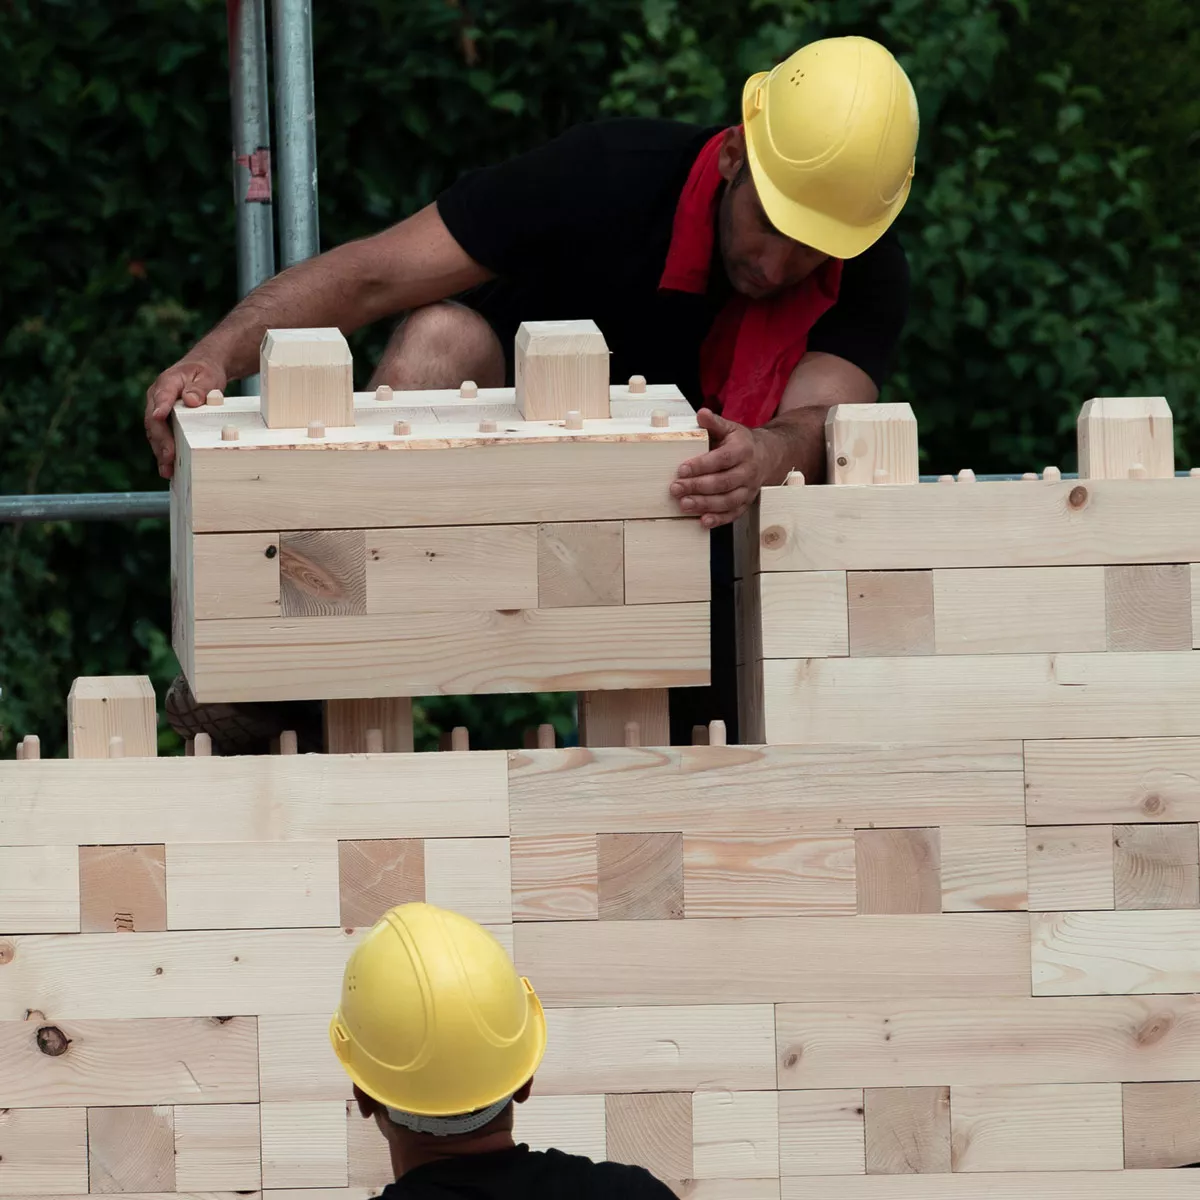 Lego Architektur: Bauarbeiter bauen TRIQBRIQ Holzklotz-Wand